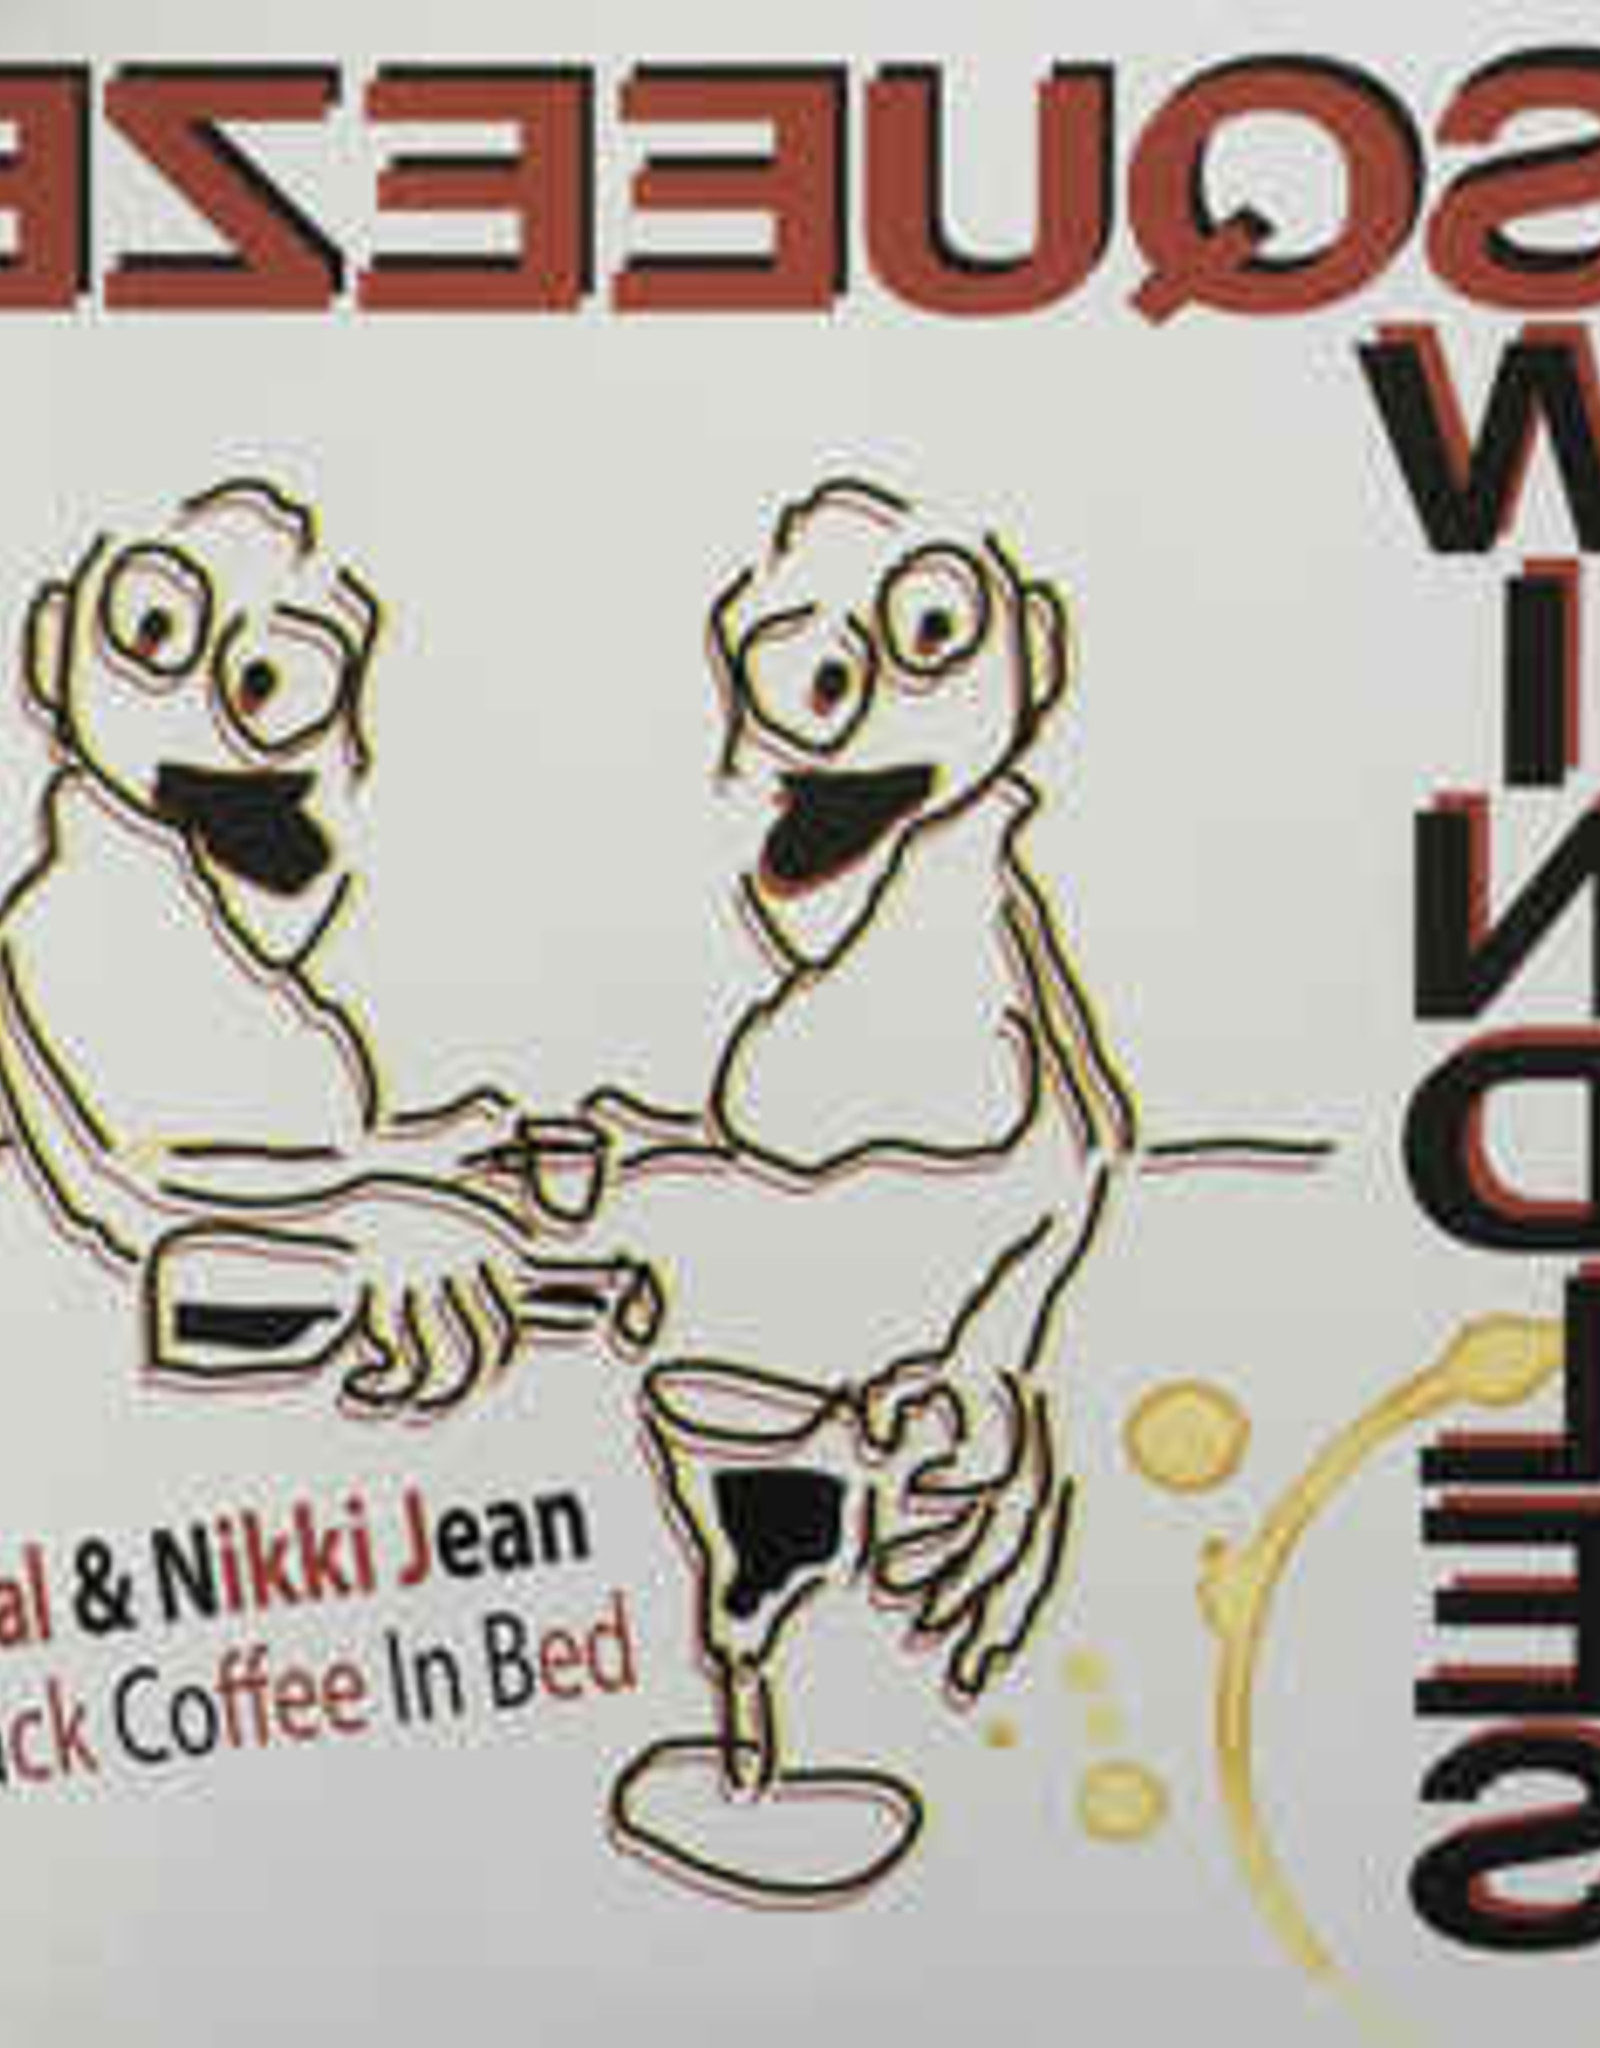 Bilal & Nikki Jean - Black Coffee in Bed(RSD 2020 BF)